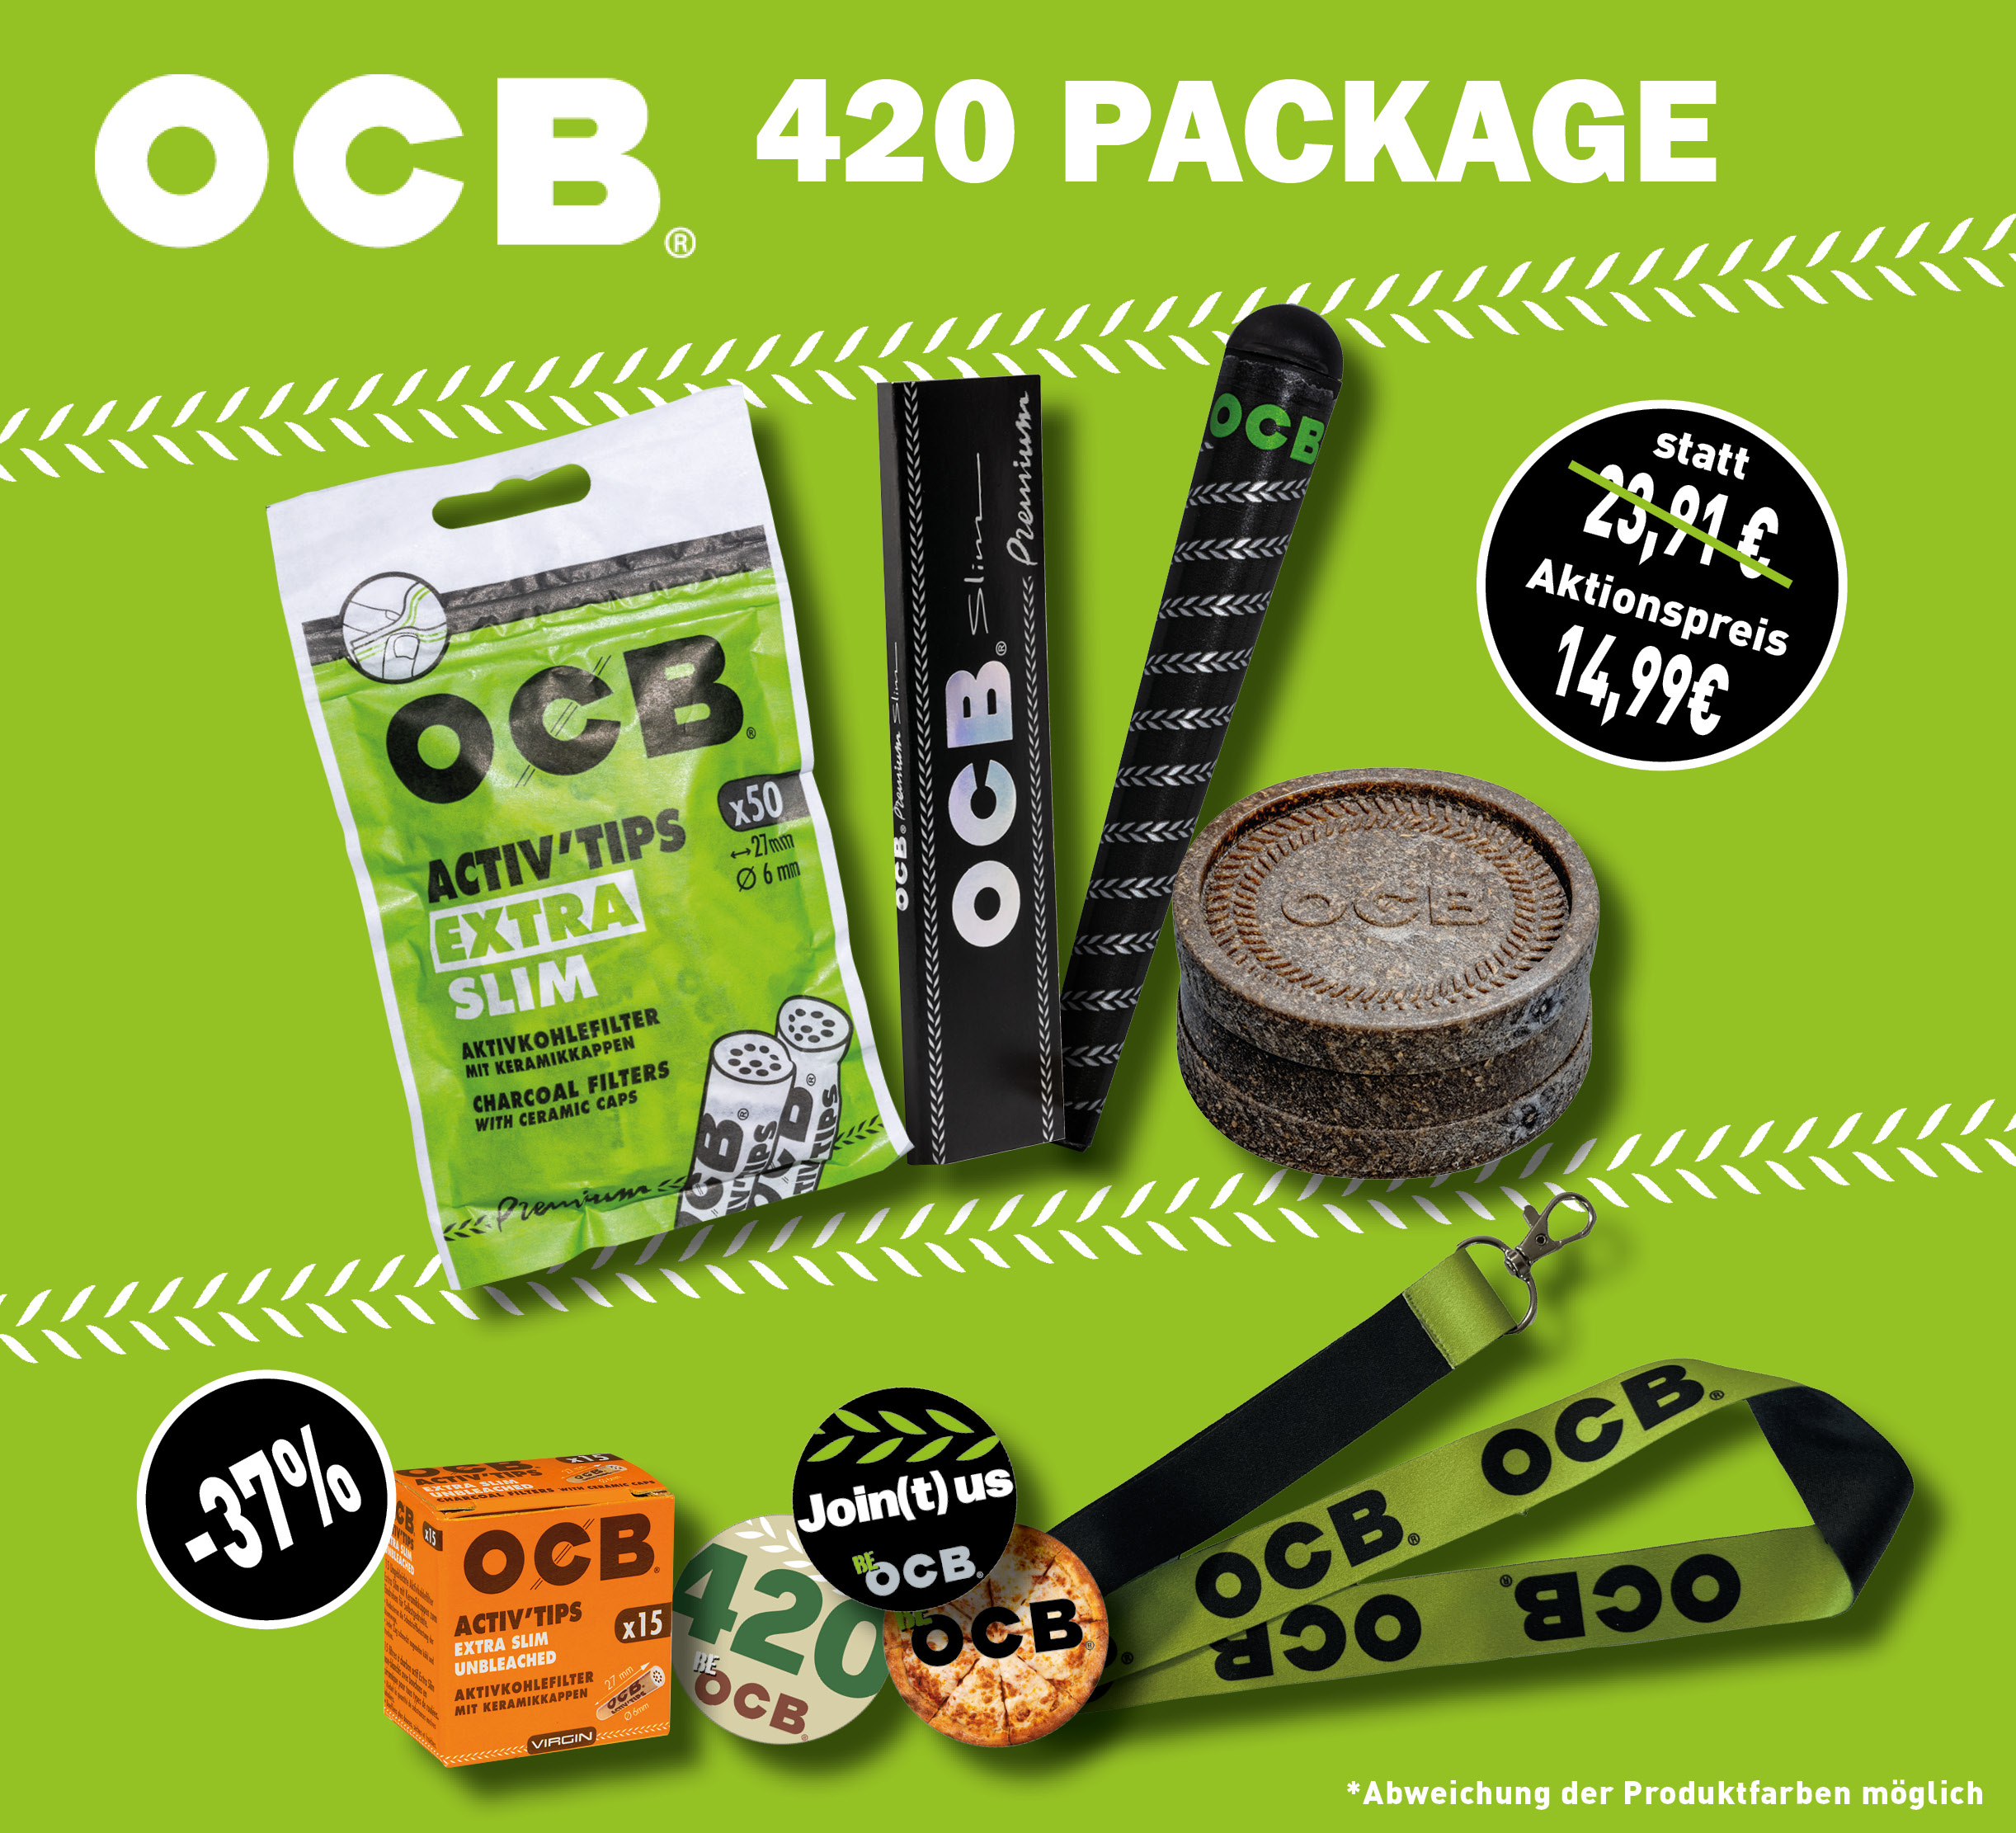 OCB 420 Package # 1